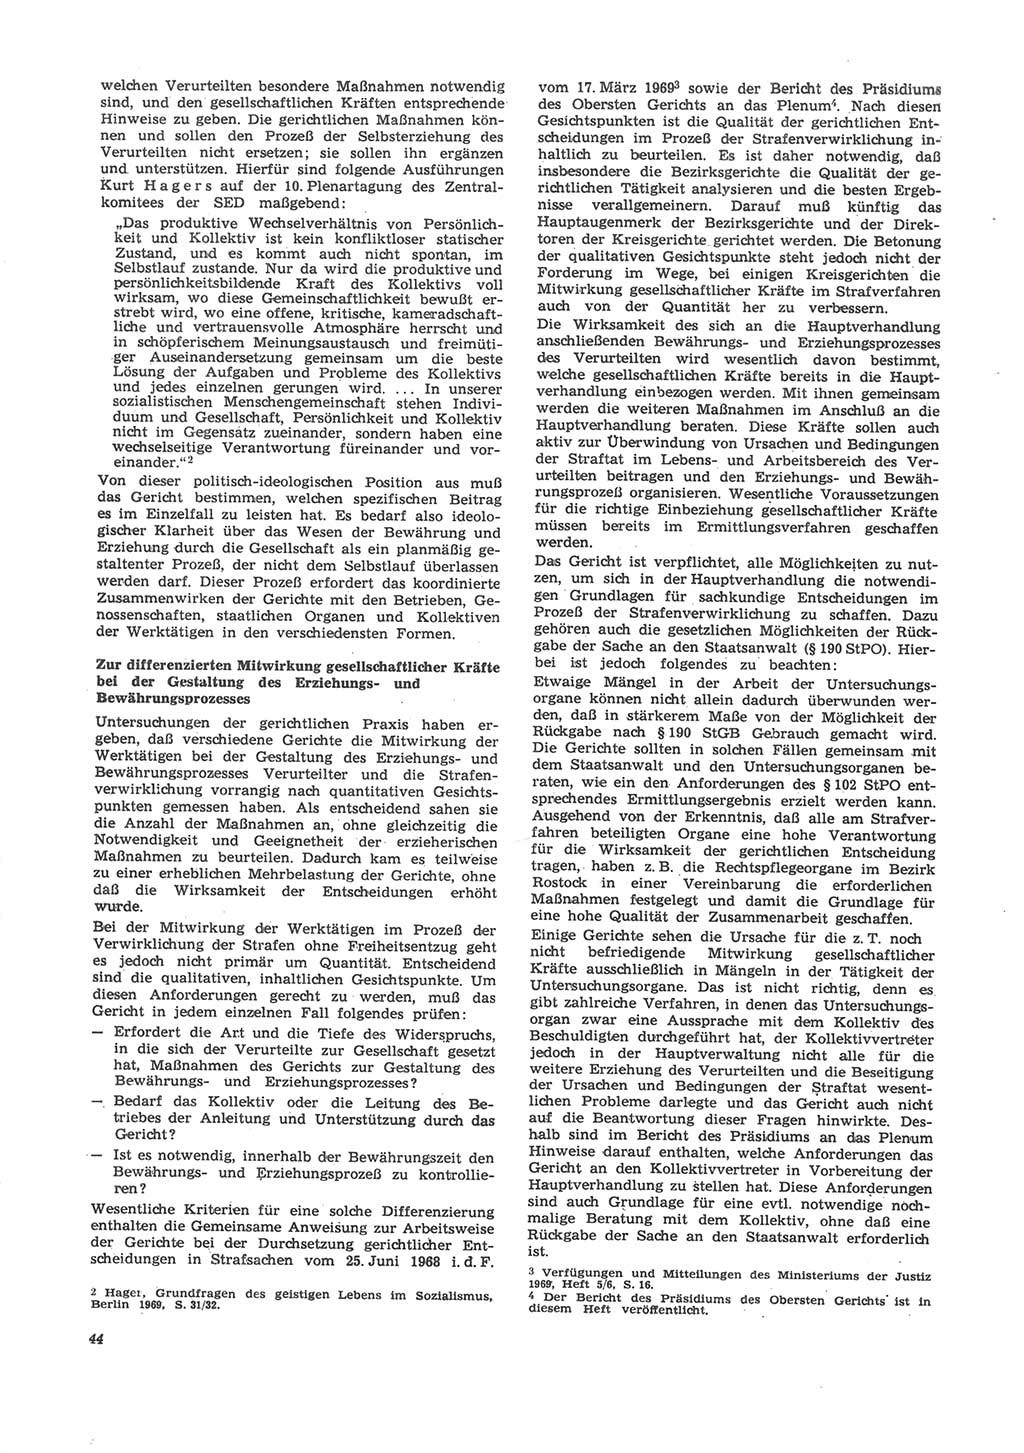 Neue Justiz (NJ), Zeitschrift für Recht und Rechtswissenschaft [Deutsche Demokratische Republik (DDR)], 24. Jahrgang 1970, Seite 44 (NJ DDR 1970, S. 44)